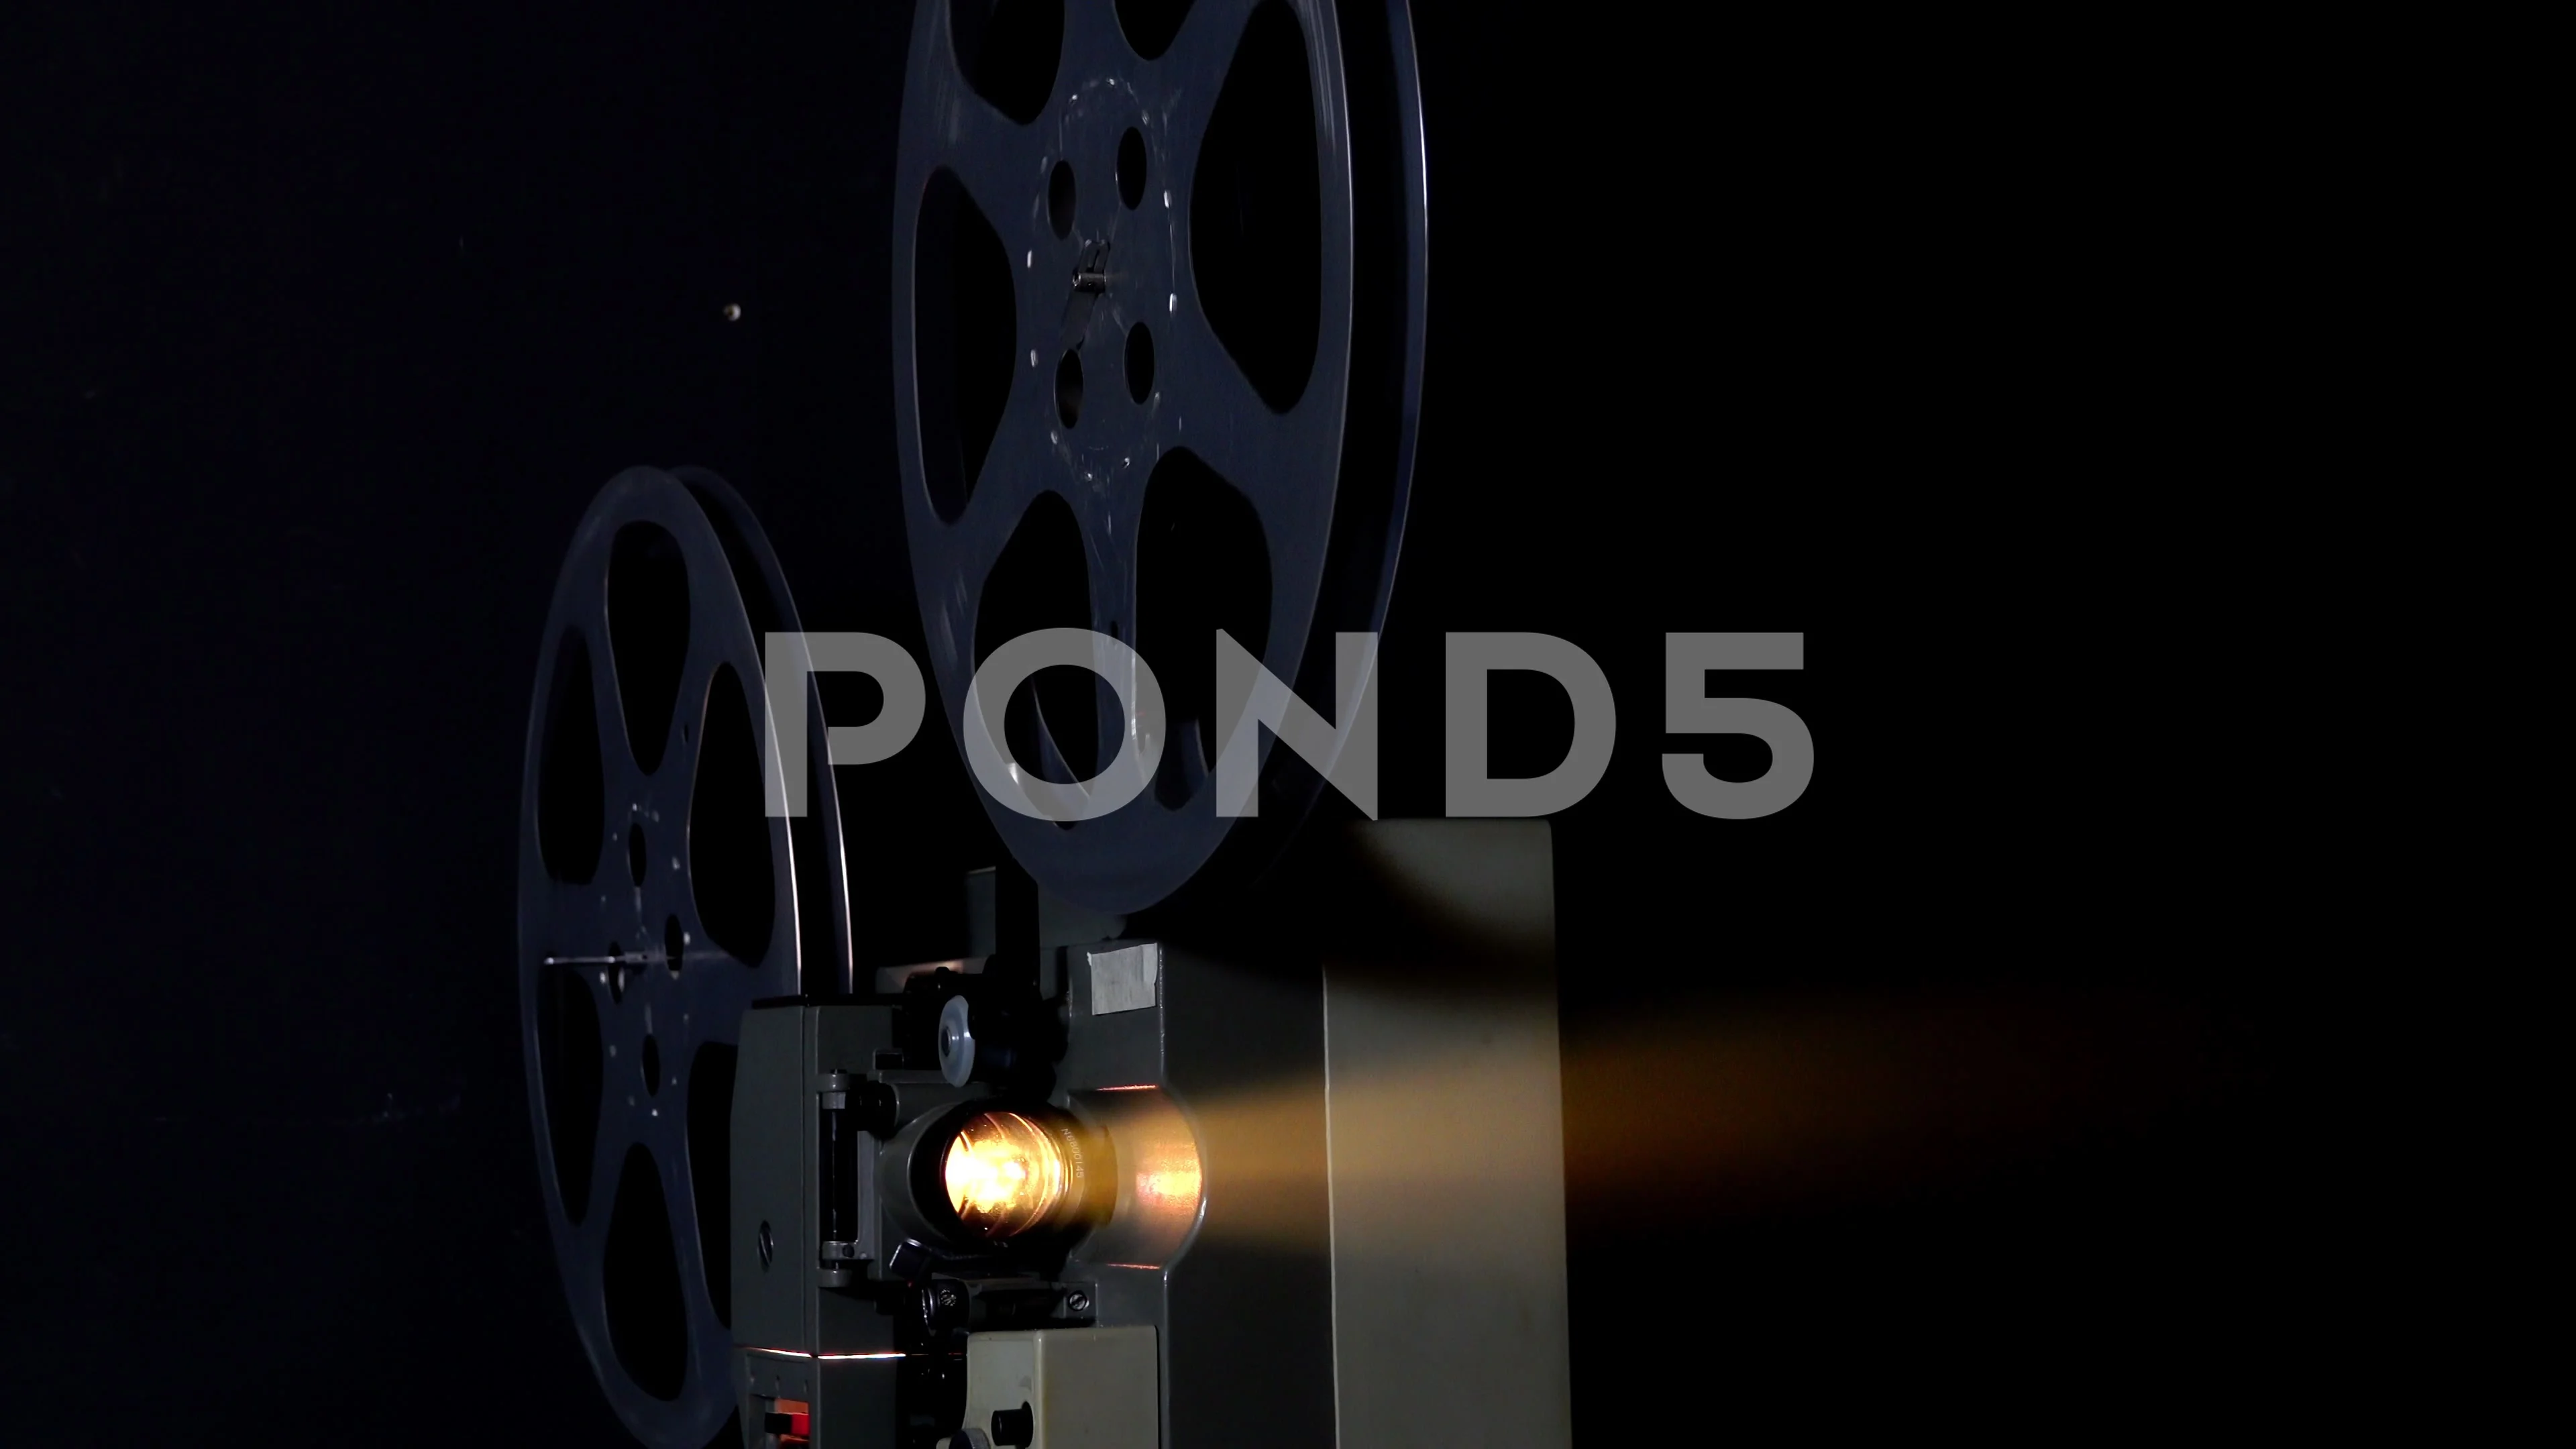 Old Film Camera, Reel drag in the film , Stock Video